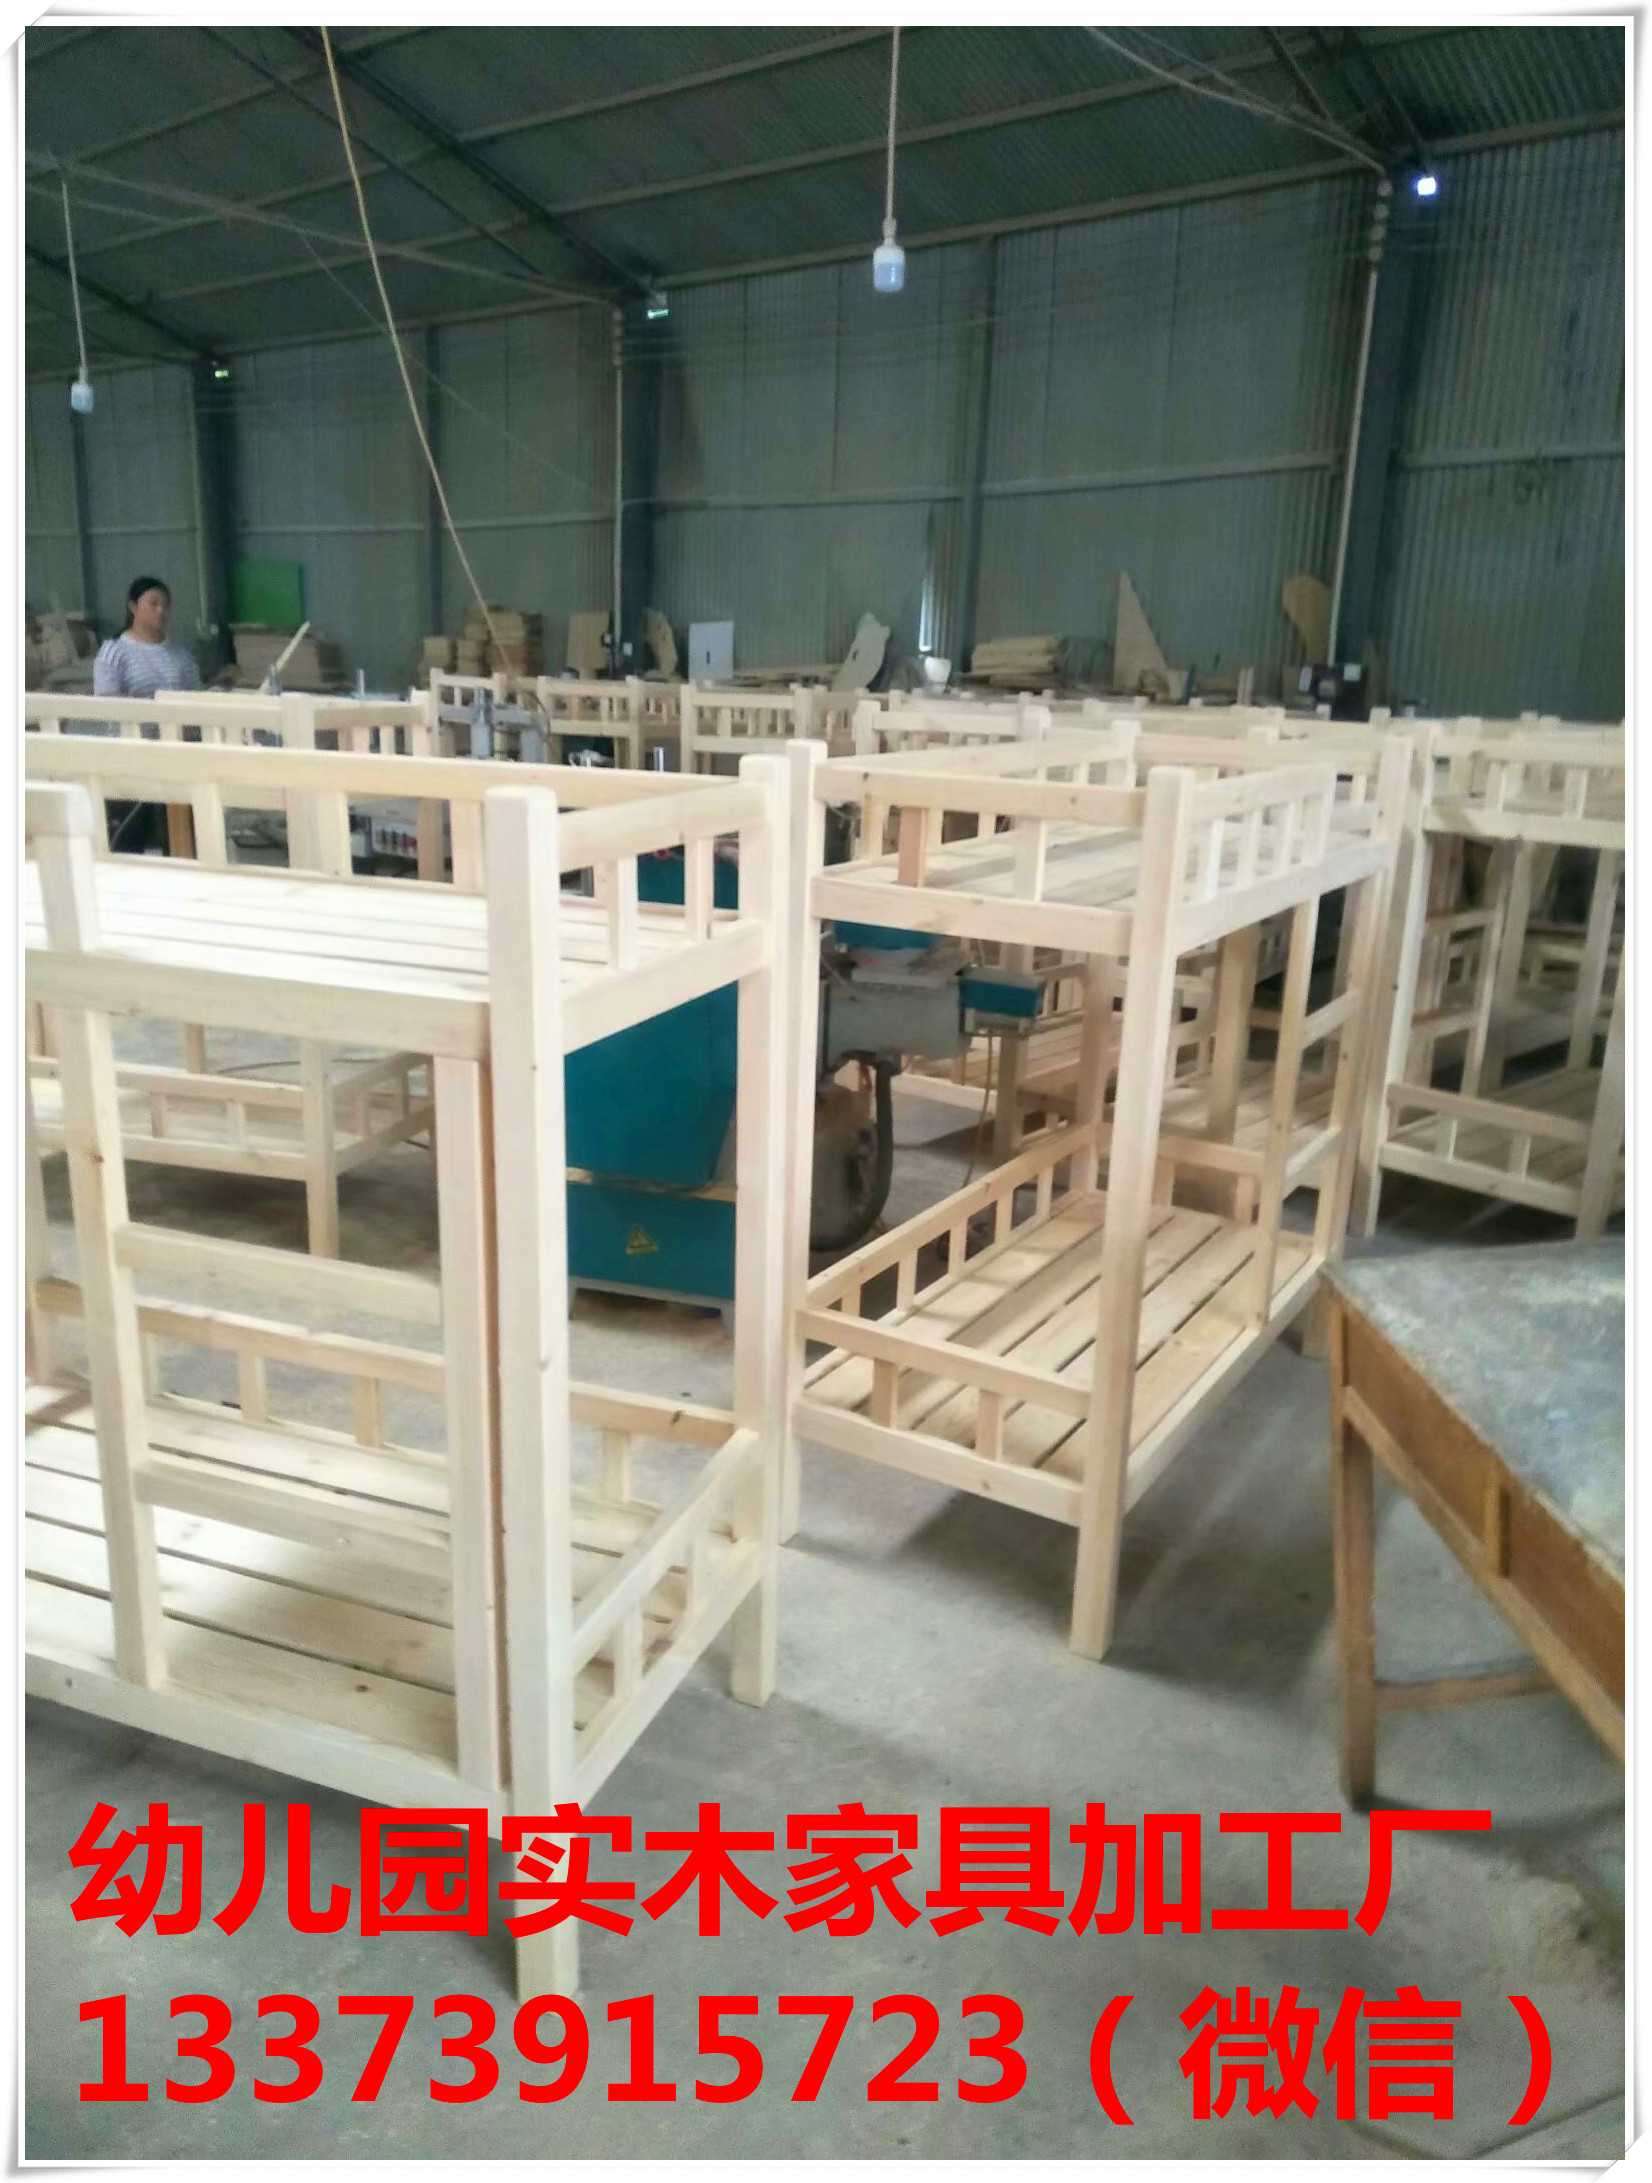 郑州学生床厂家|郑州课桌椅-郑州实木上下床加工厂 郑州学生上下床 上下床厂家